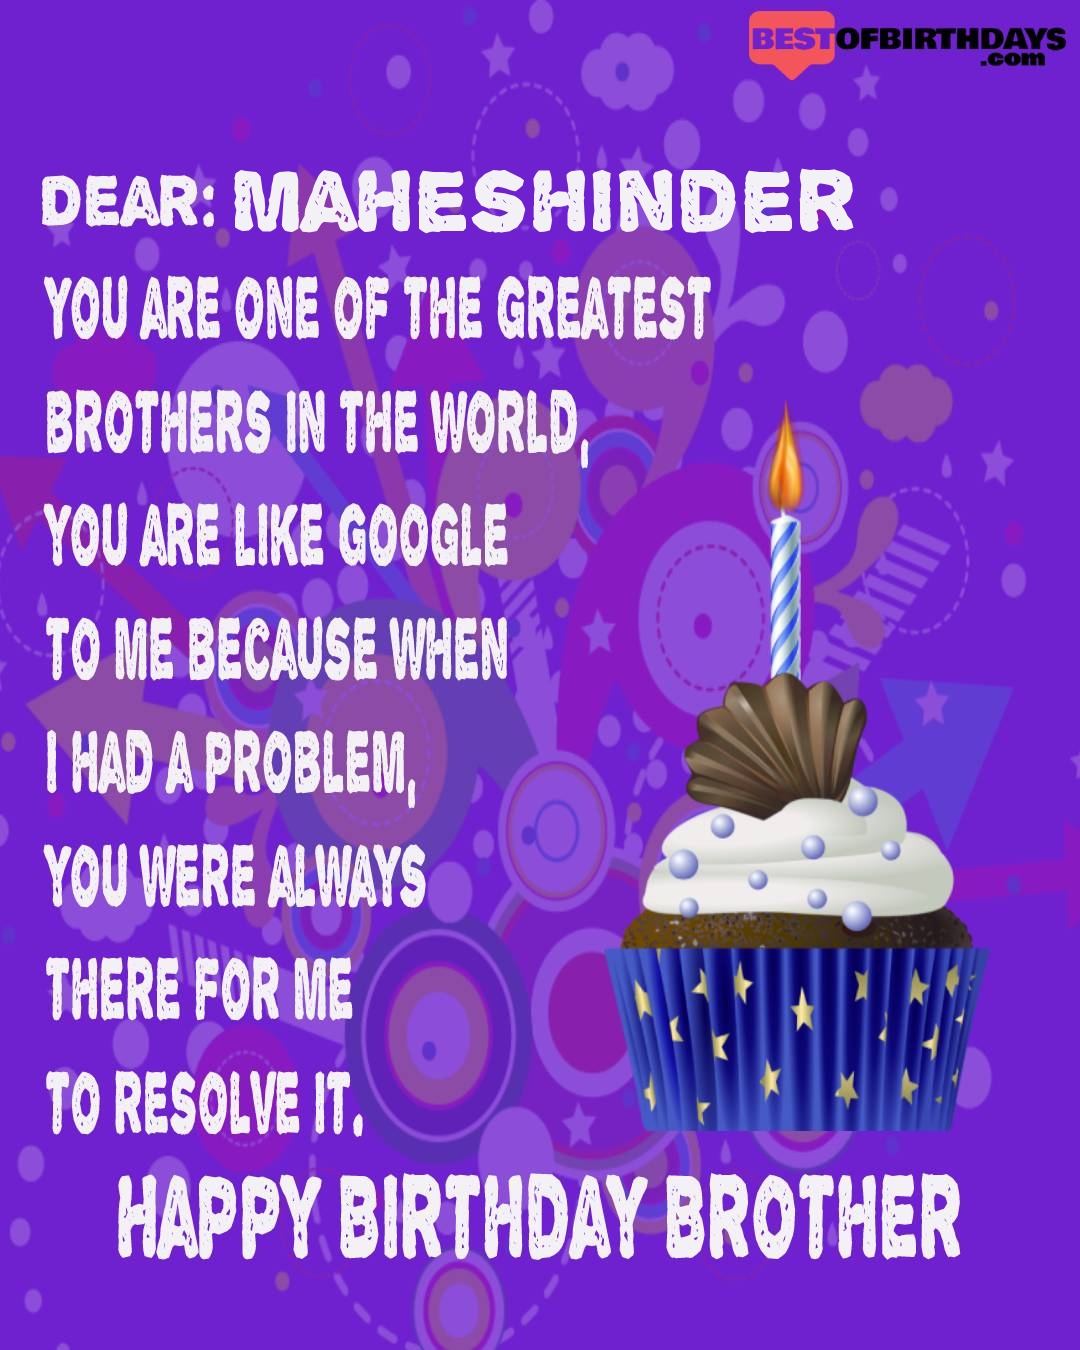 Happy birthday maheshinder bhai brother bro